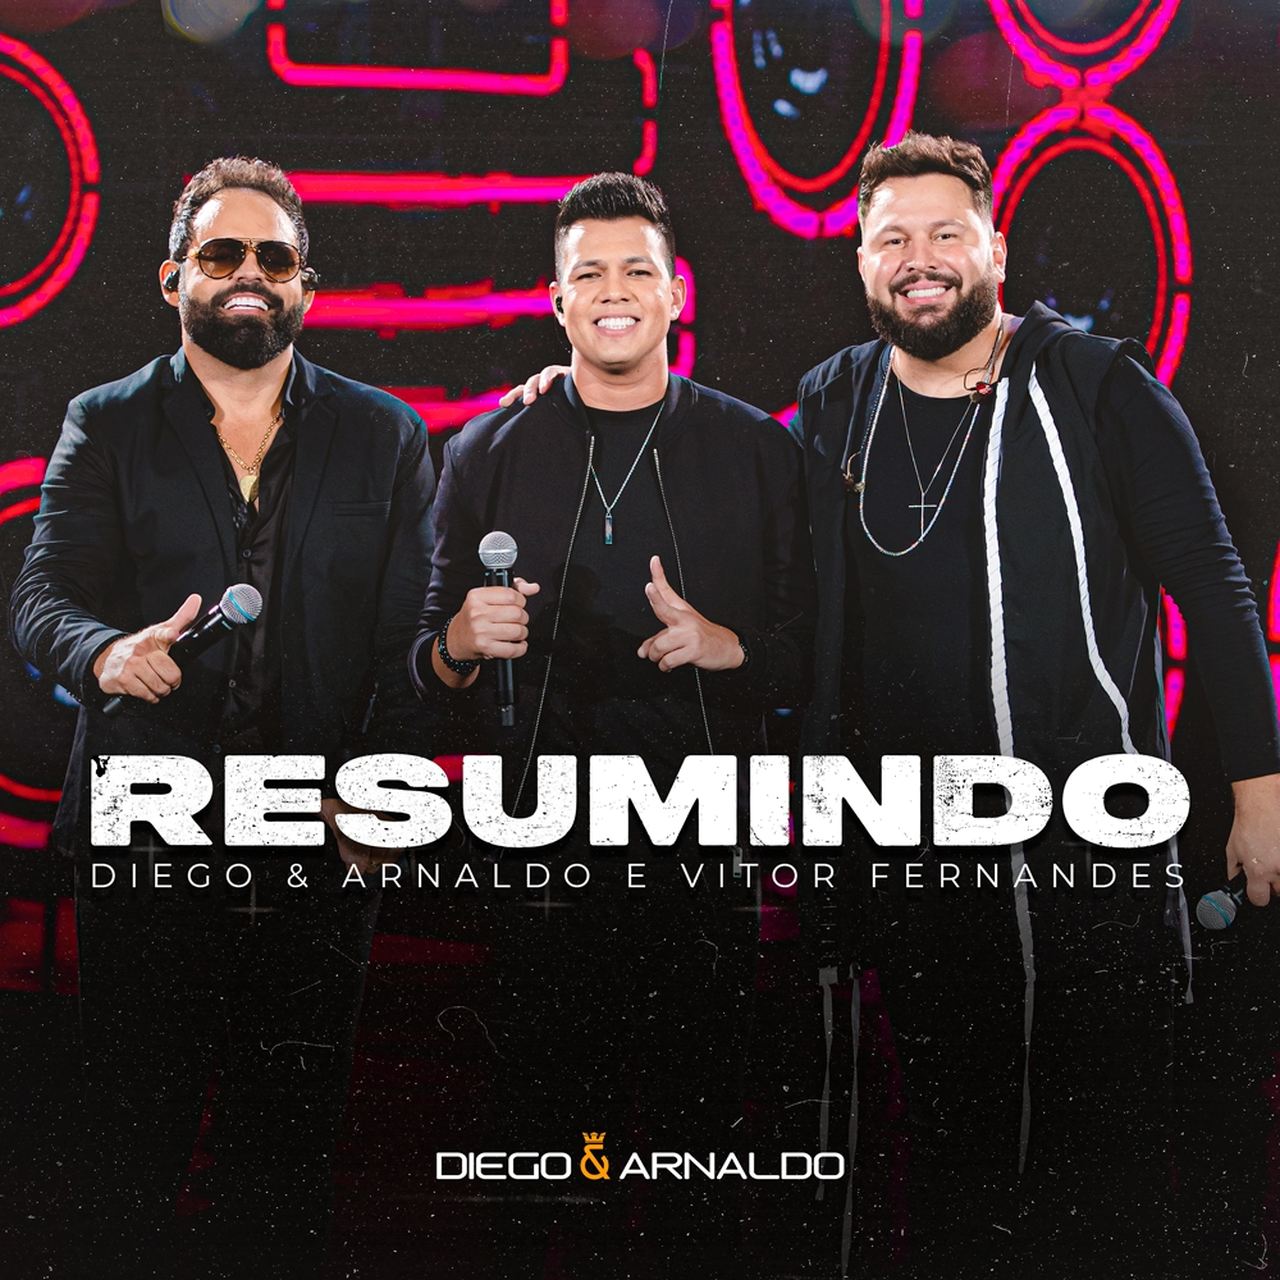 Diego e Arnaldo lançam "Resumindo" com a participação de Vitor Fernandes 41